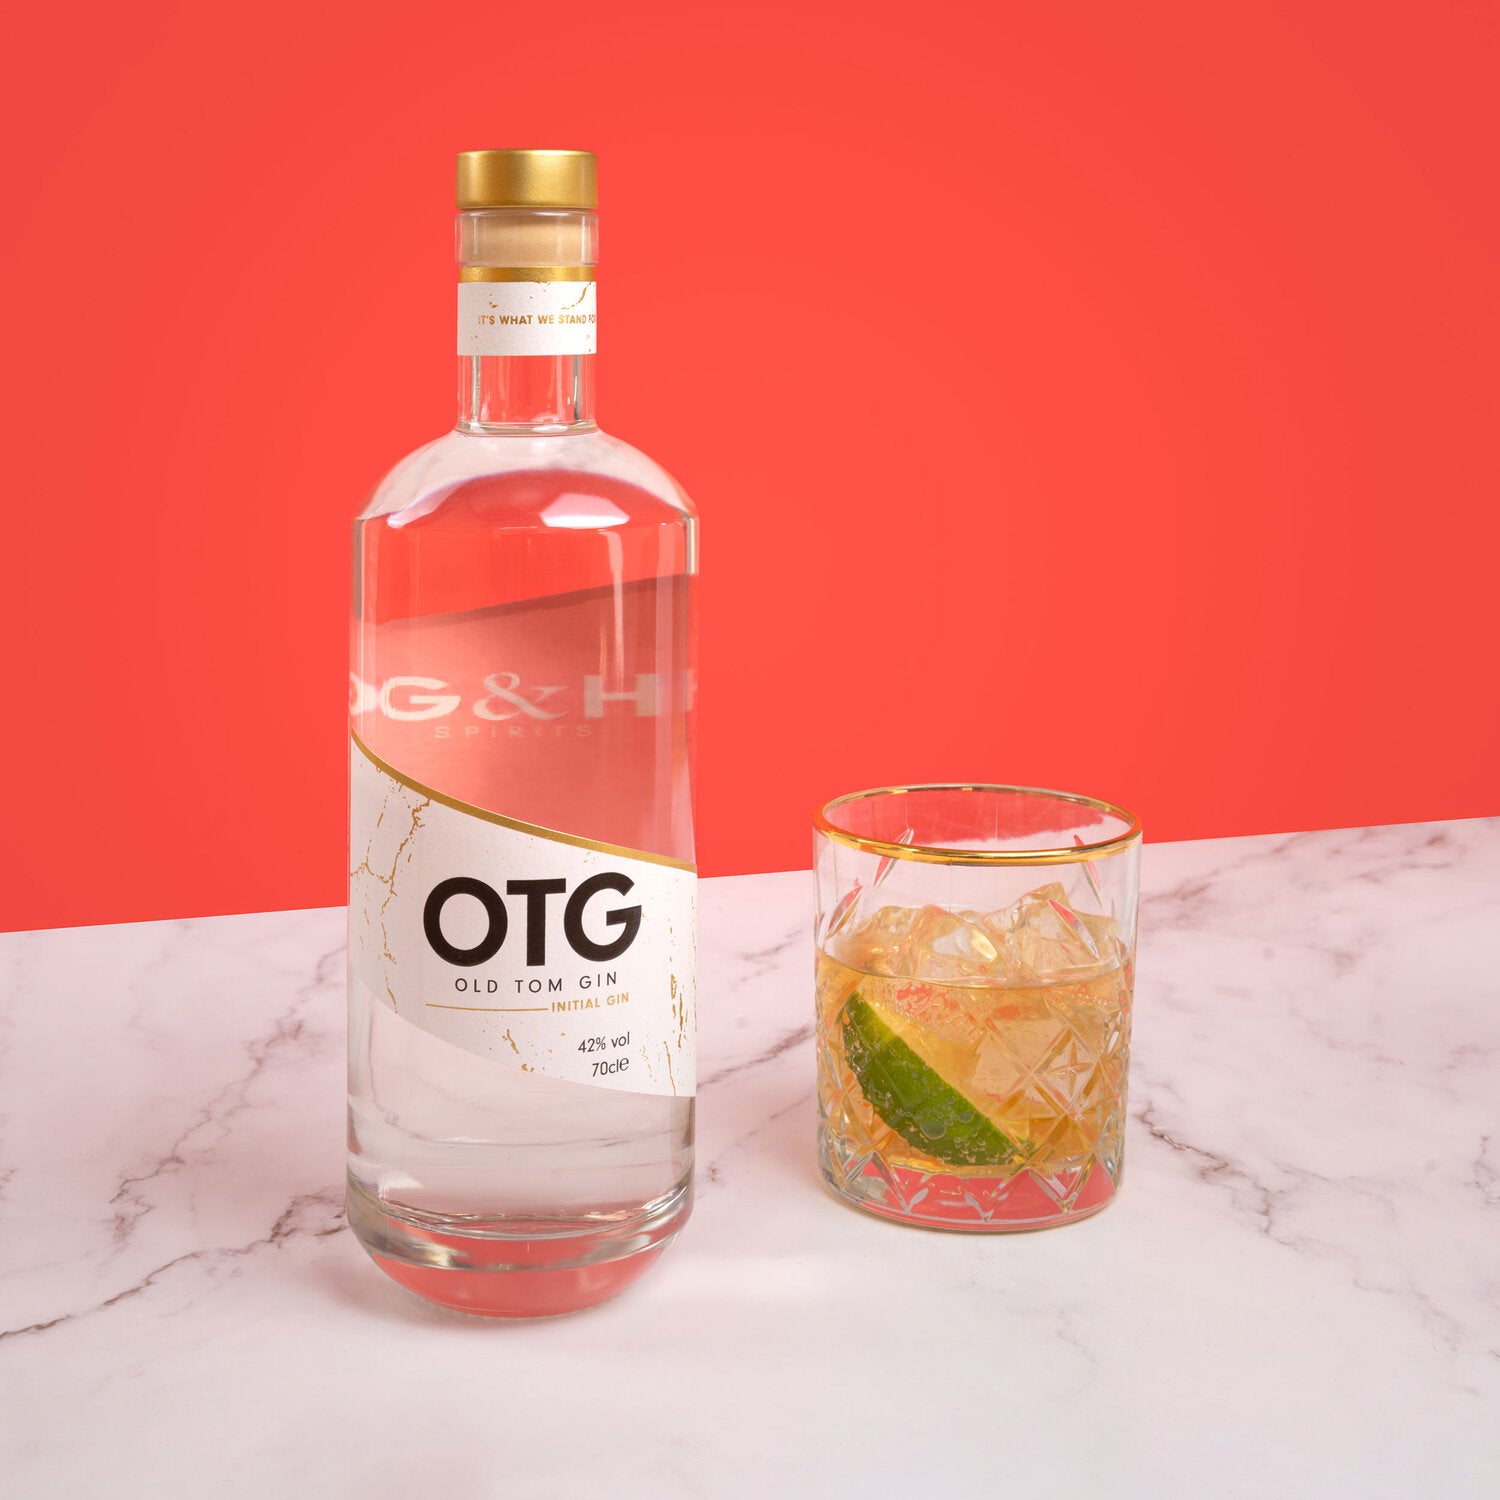 OTG Initial Gin Signature Serve